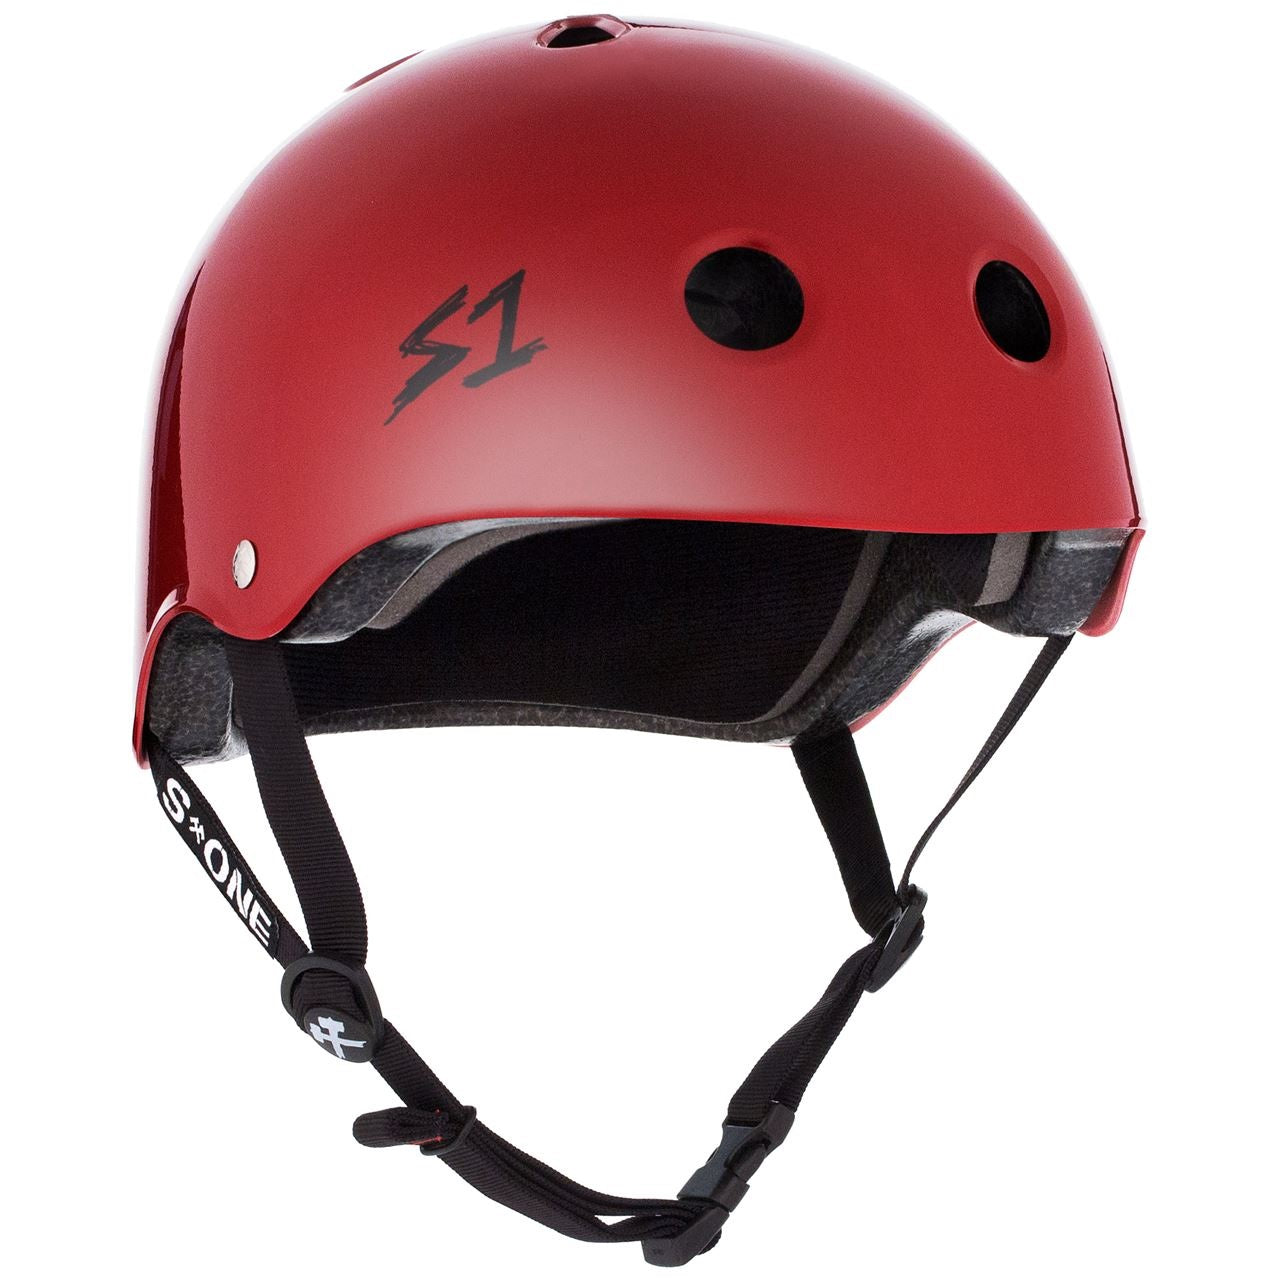 S1 Lifer Helmet - Blood Red Gloss